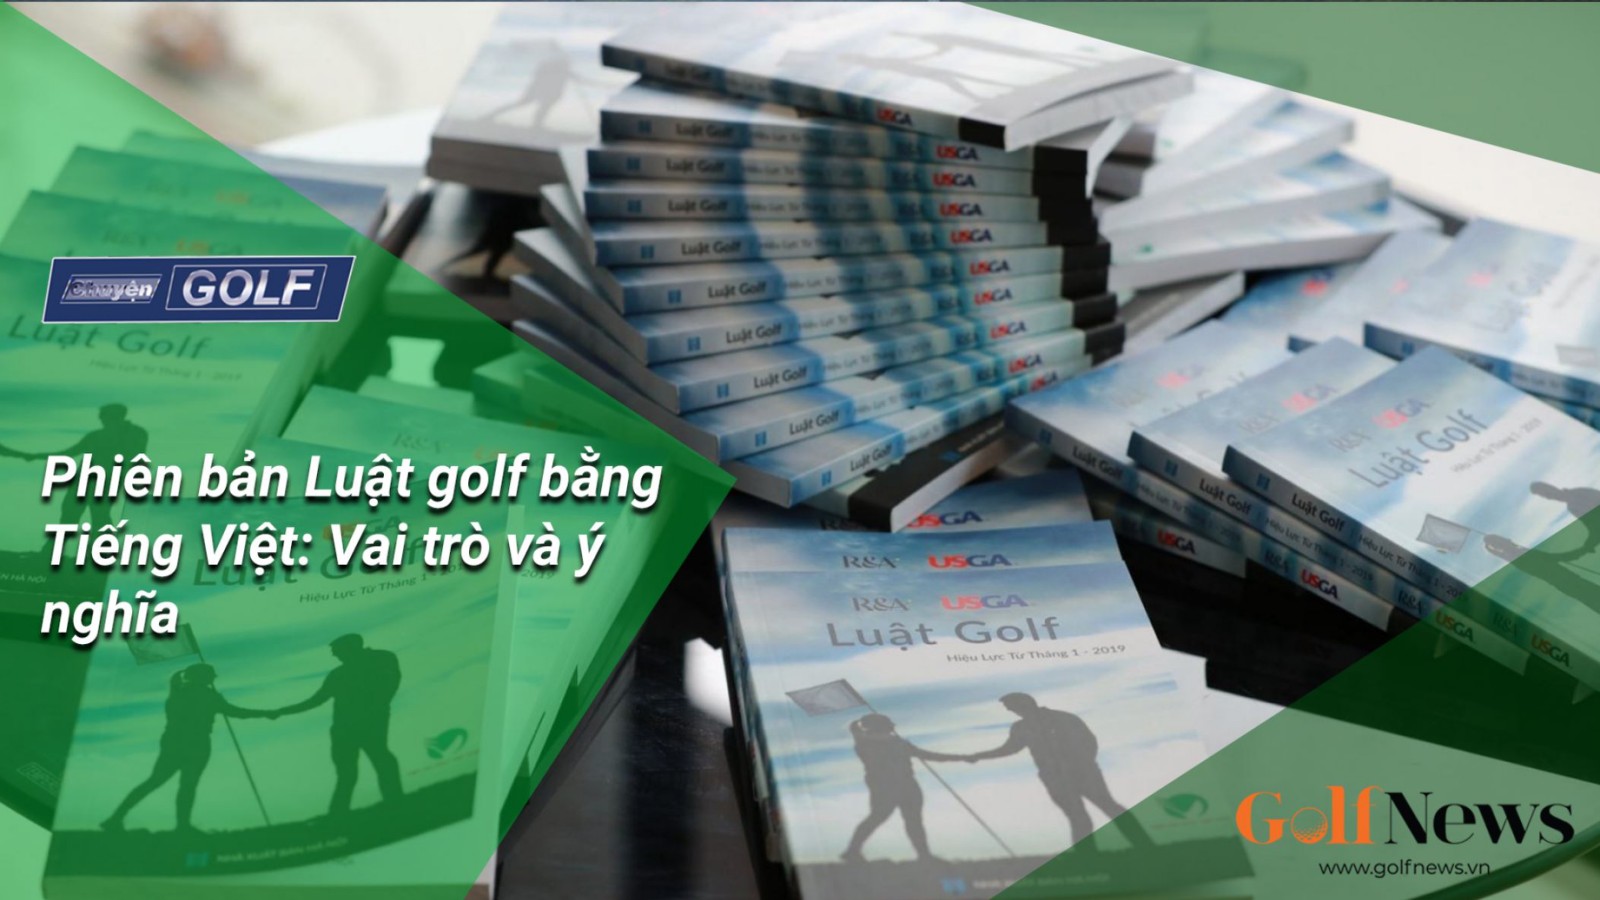 Chuyện golf 85: Sách phiên bản Luật golf bằng Tiếng Việt: vai trò và ý nghĩa